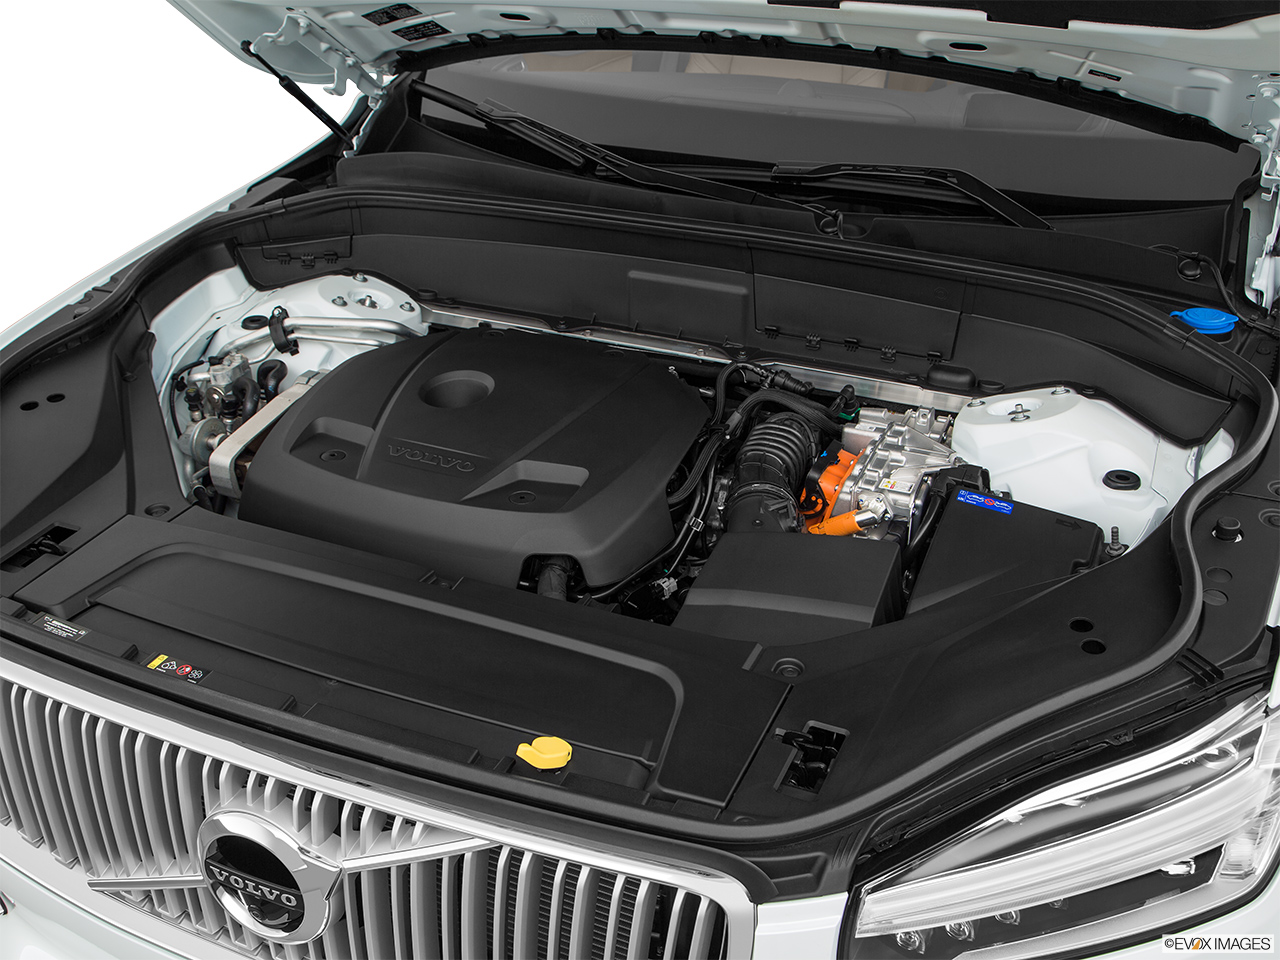 2018 Volvo XC90 T8 Inscription eAWD Plug-in Hybrid Engine. 